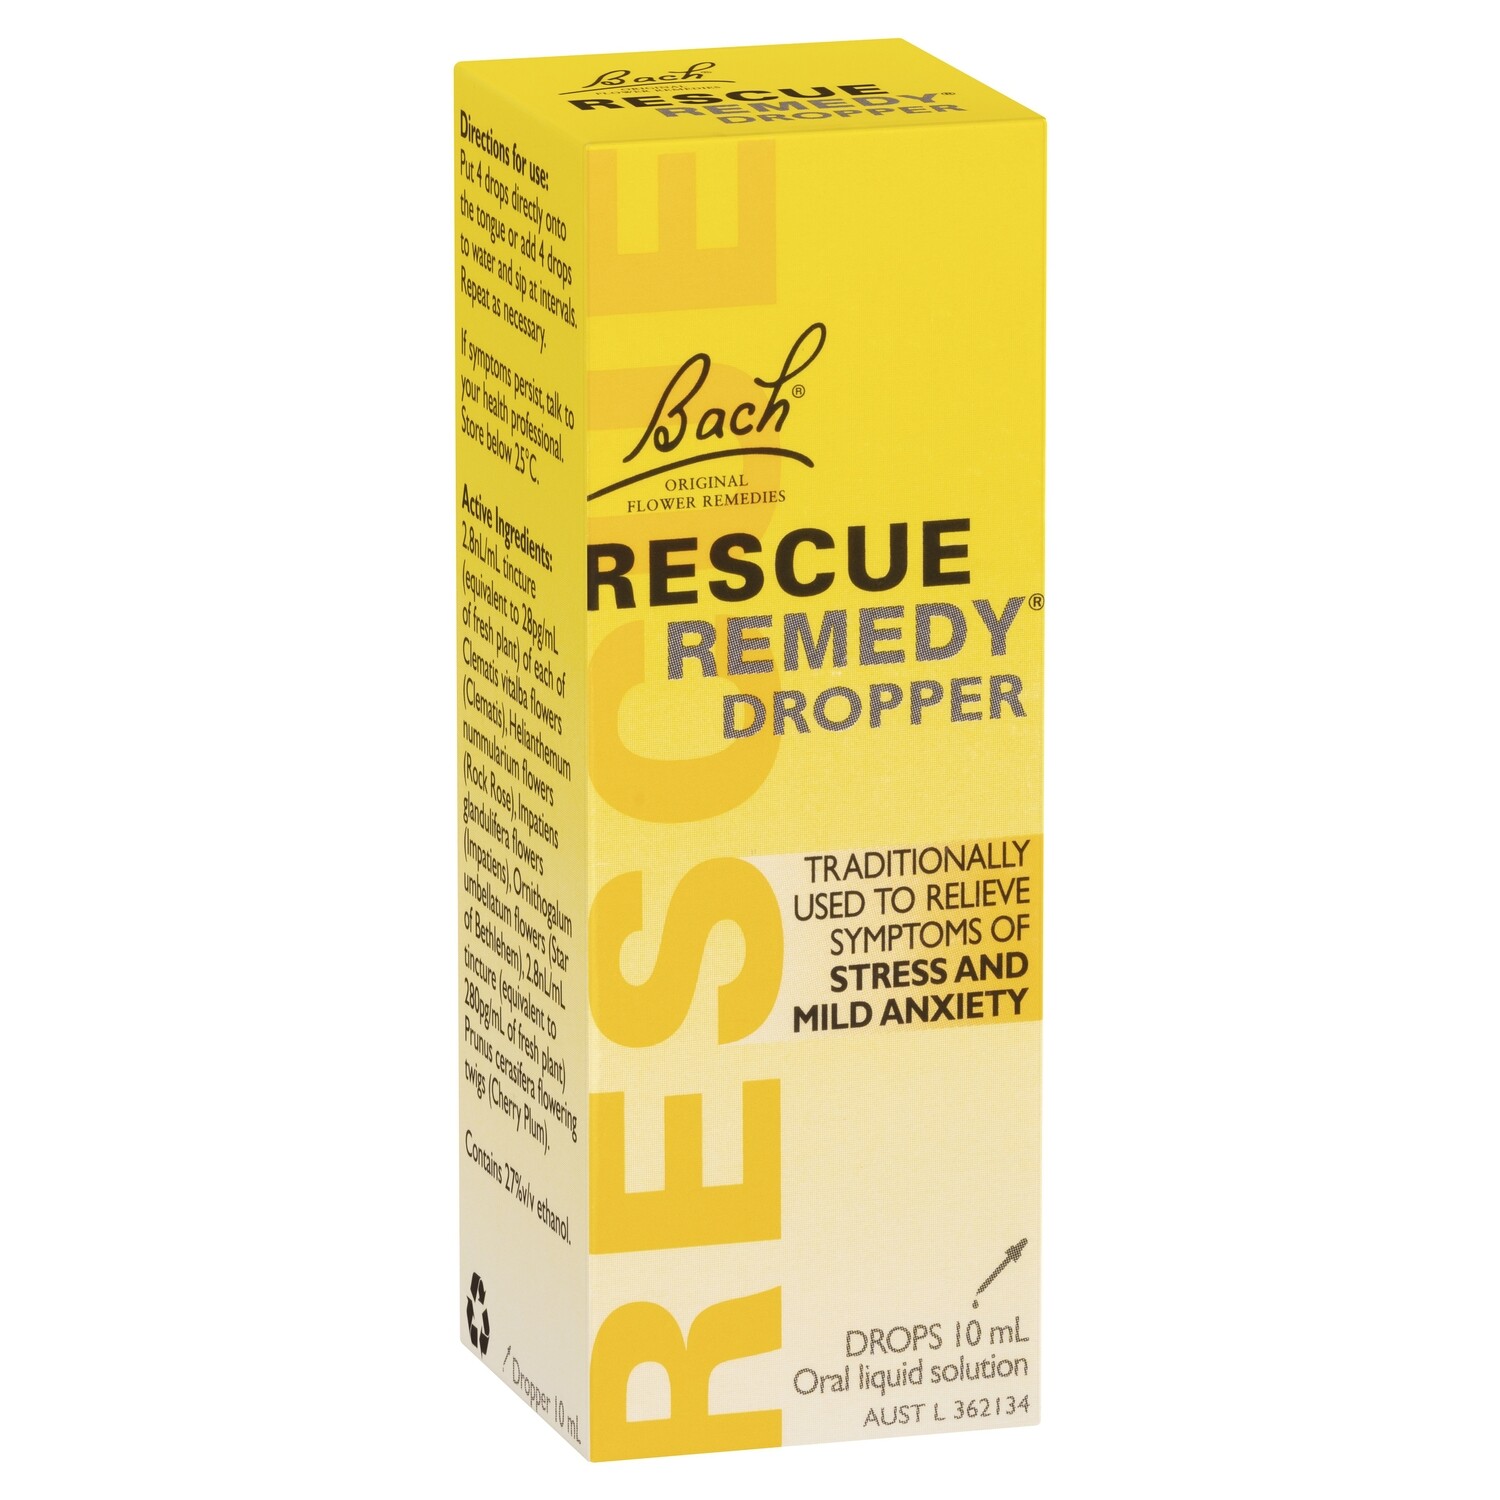 Rescue Remedy Dropper - 10ml